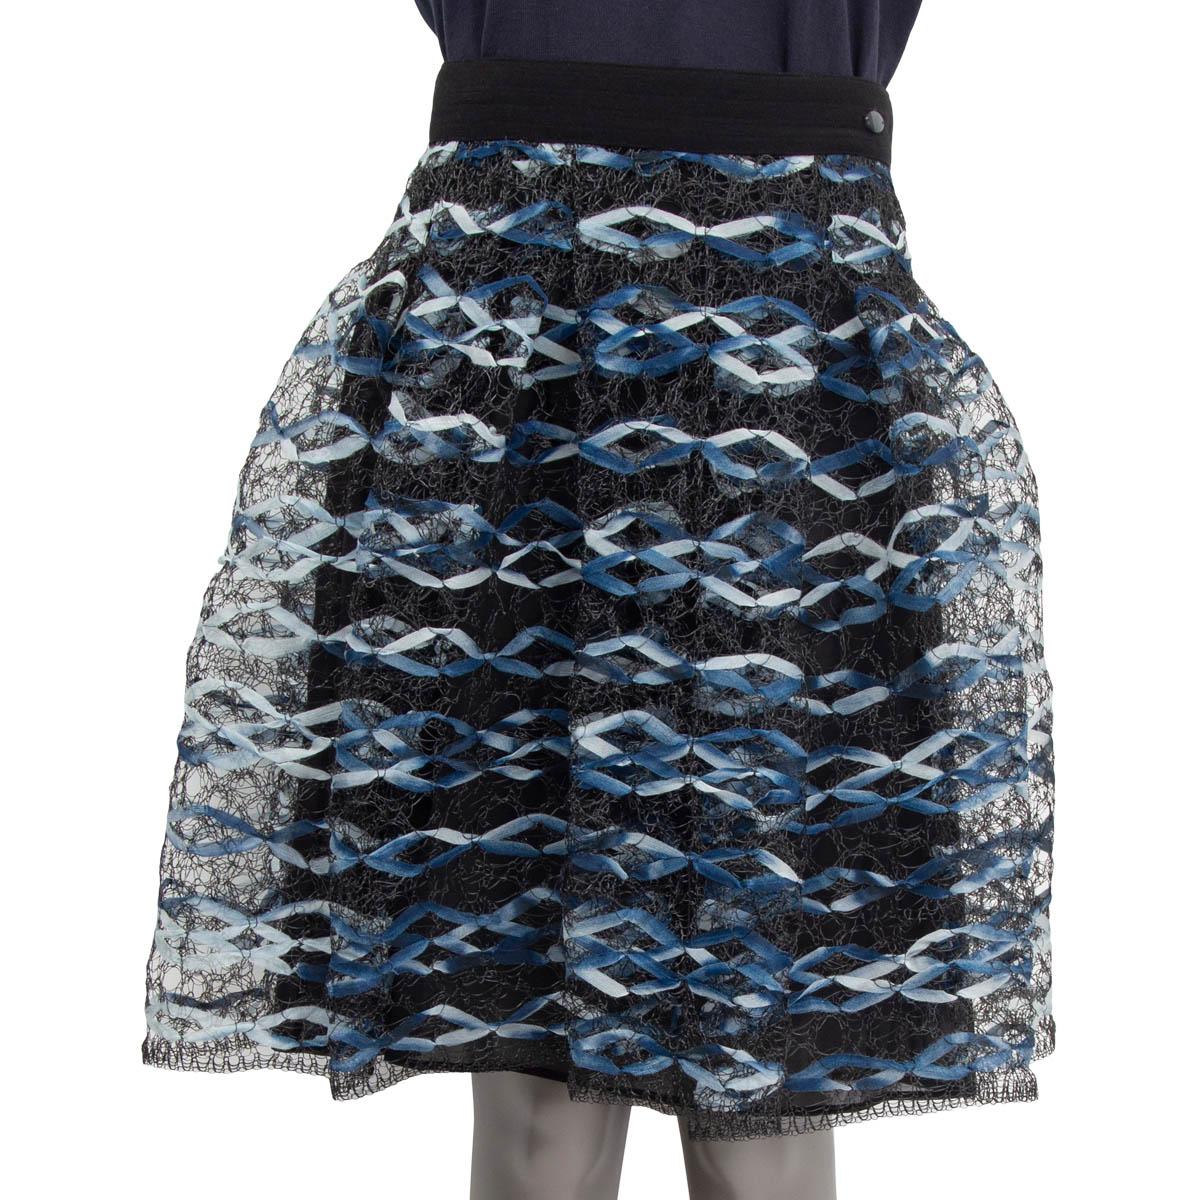 Jupe plissée en résille printemps-été 2018 100% authentique Chanel en polyester (37%), polyamide (36%) et coton (27%) bleu marine, bleu clair et blanc. L'emblème 